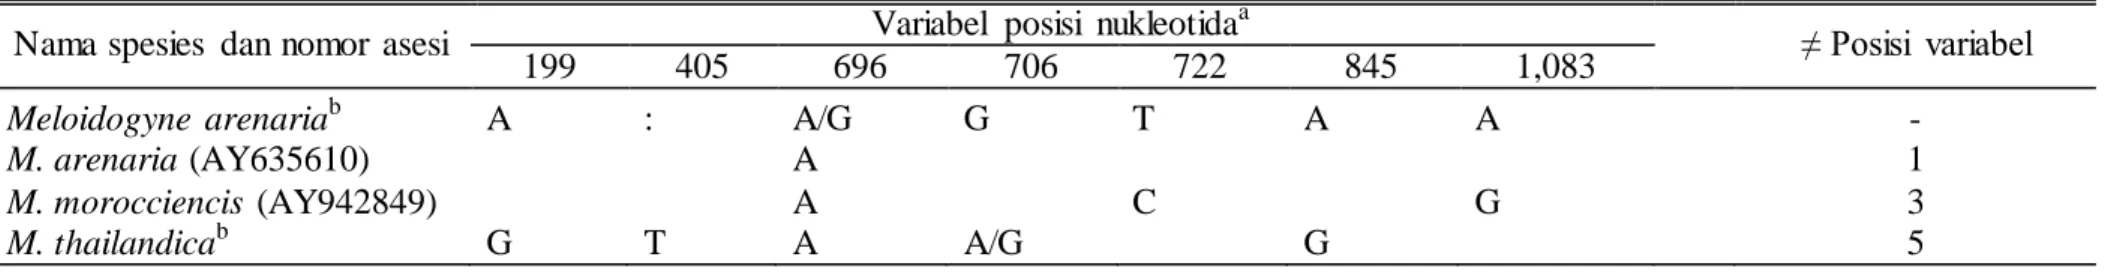 Tabel  6. Variabel  posisi  nukleotida  pada bagian  perluasan  28S rDNA D2-D3 beberapa nematoda  puru  akar 